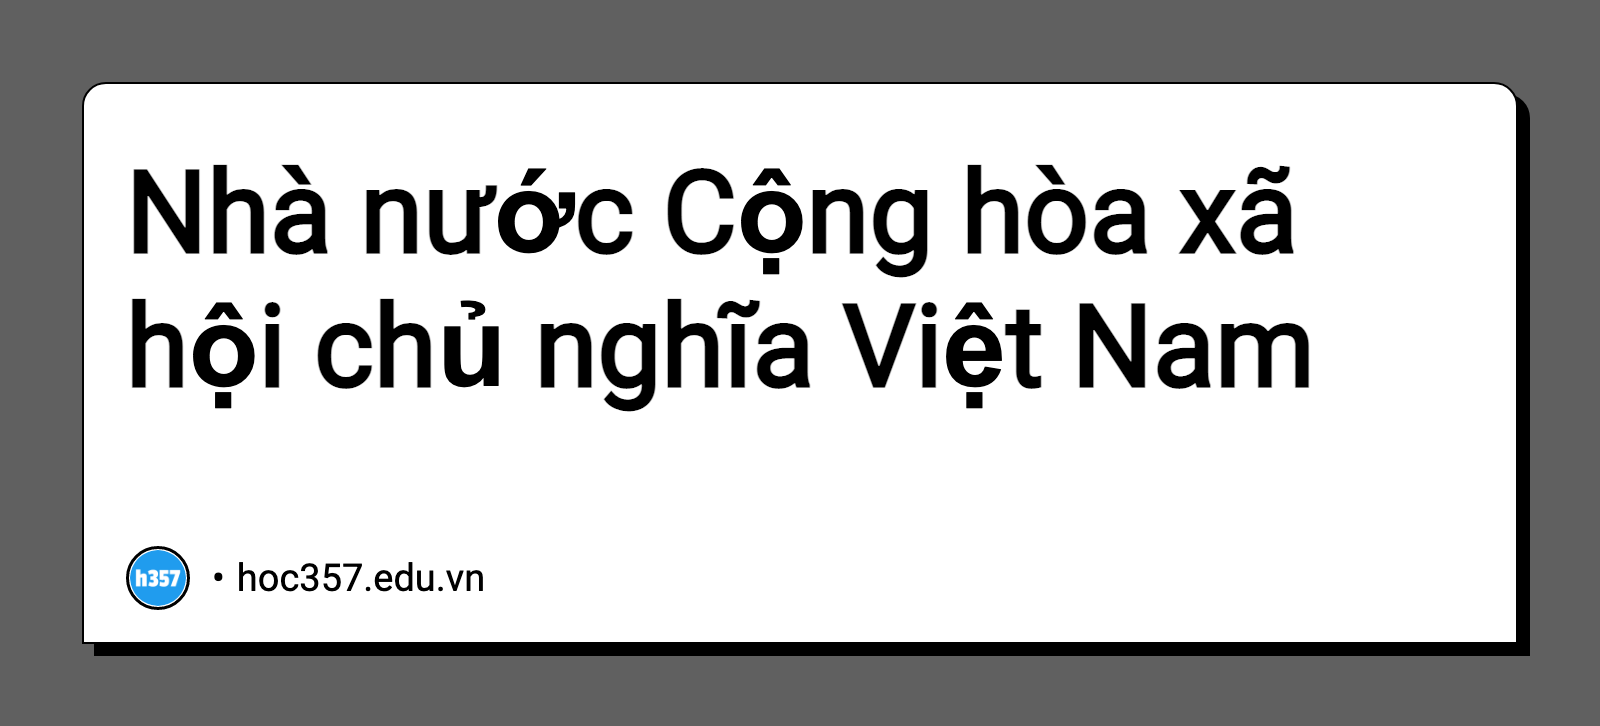 Hình minh họa Nhà nước Cộng hòa xã hội chủ nghĩa Việt Nam